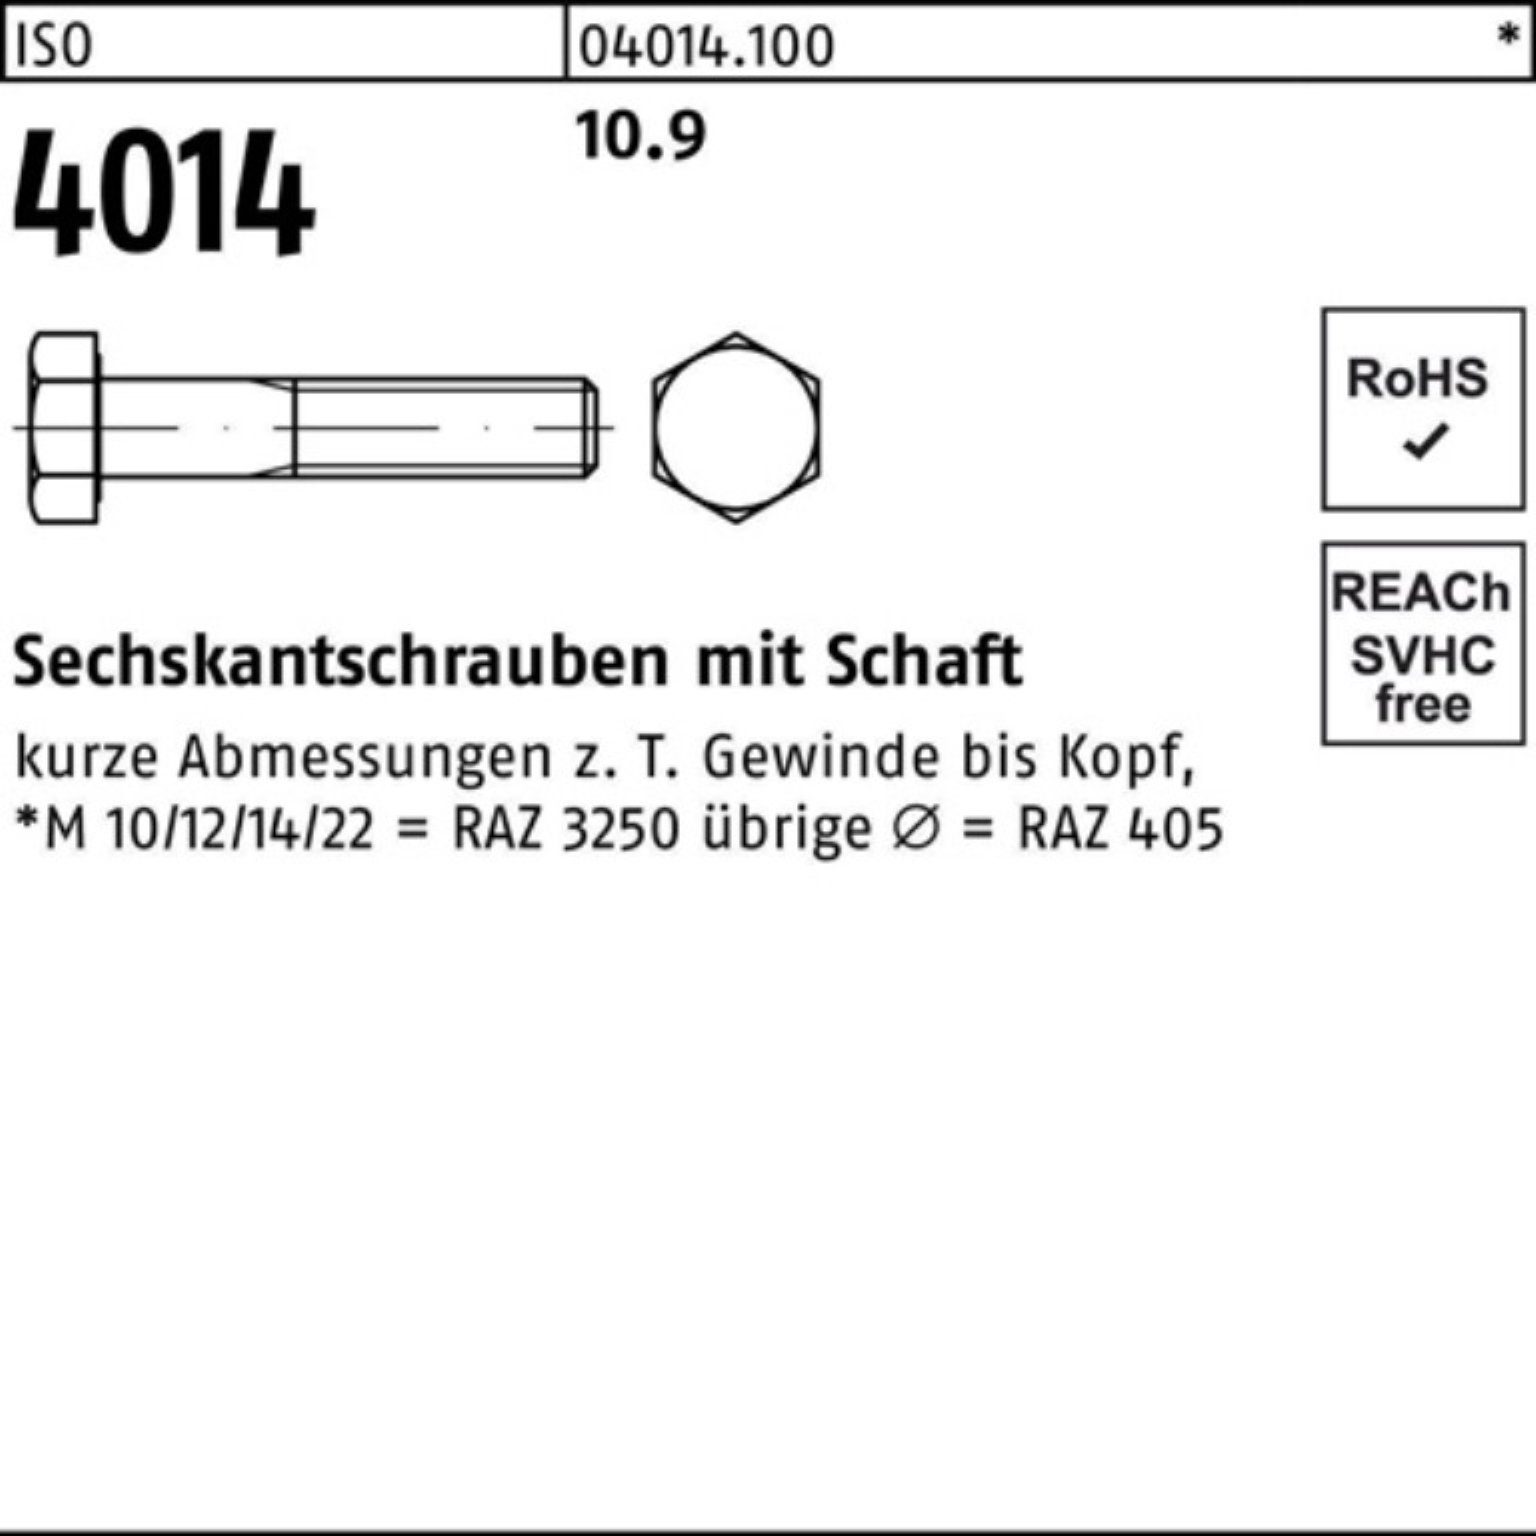 Bufab Sechskantschraube 100er Pack Sechskantschraube 4014 Schaft 1 10.9 M27x Stück IS ISO 240